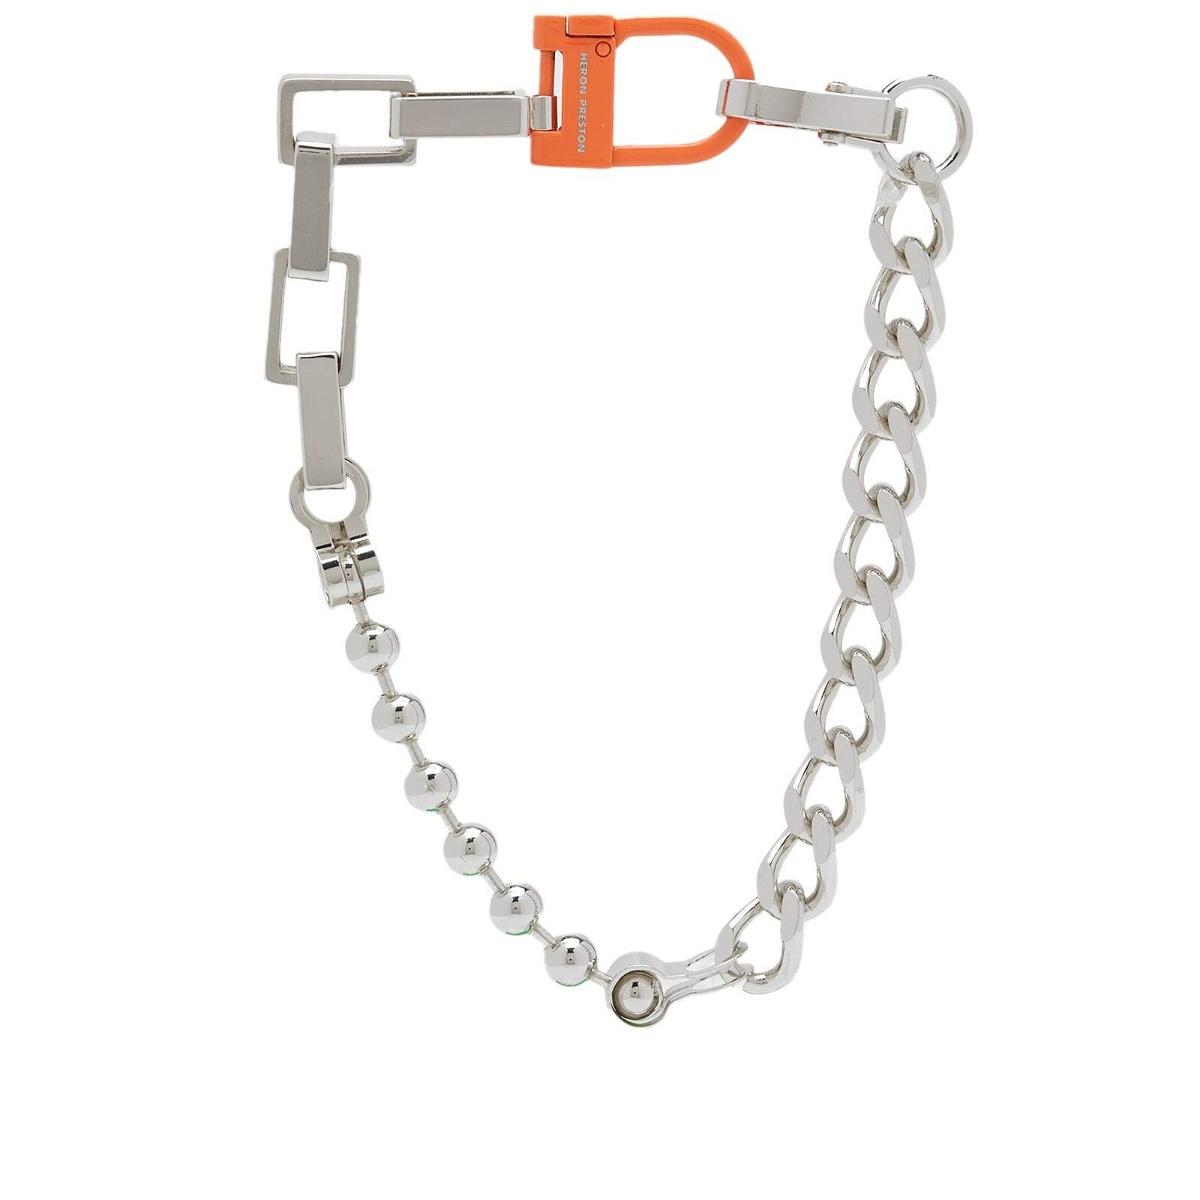 Photo: Heron Preston Men's Multichain Square Necklace in Silver/Orange